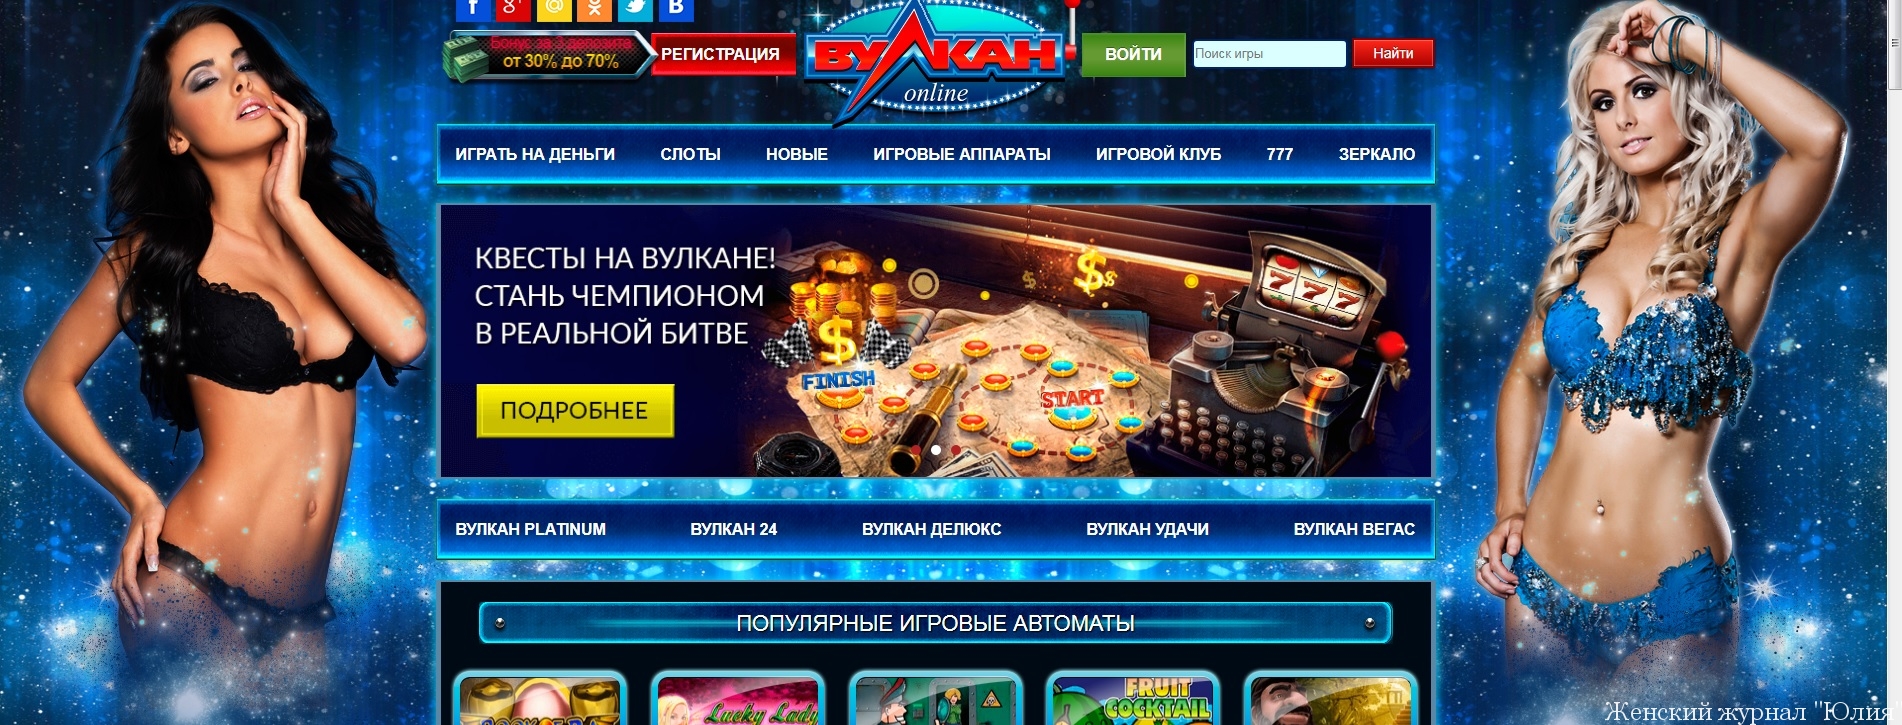 Онлайн казино вулкан клуб зеркало вход онлайн казино вулкан 777